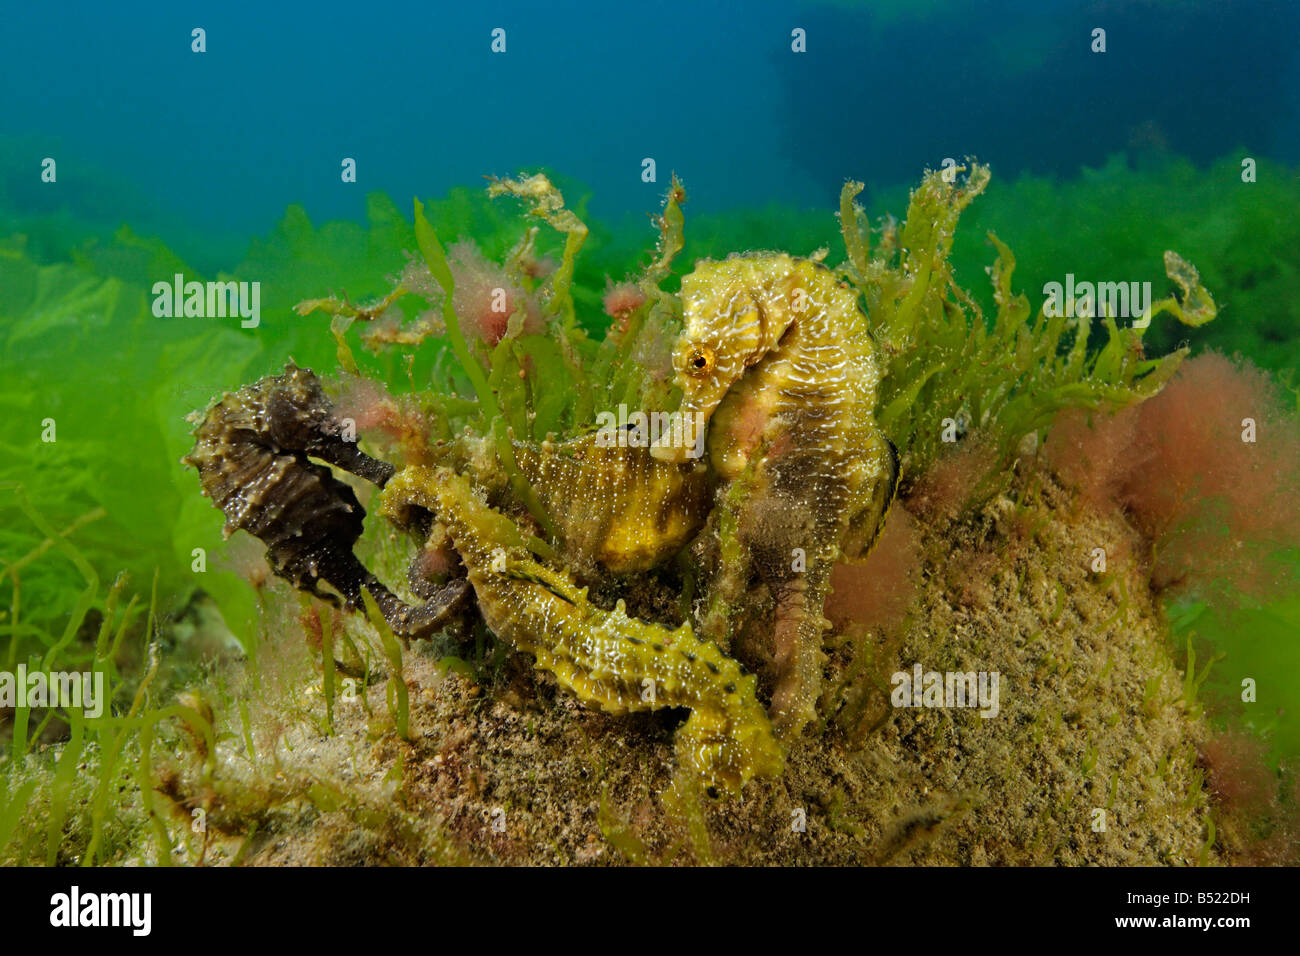 Hippocampus guttulatus Hippocampus ramulosus, Long snouted seahorse, groupe de quatre hippocampes Banque D'Images